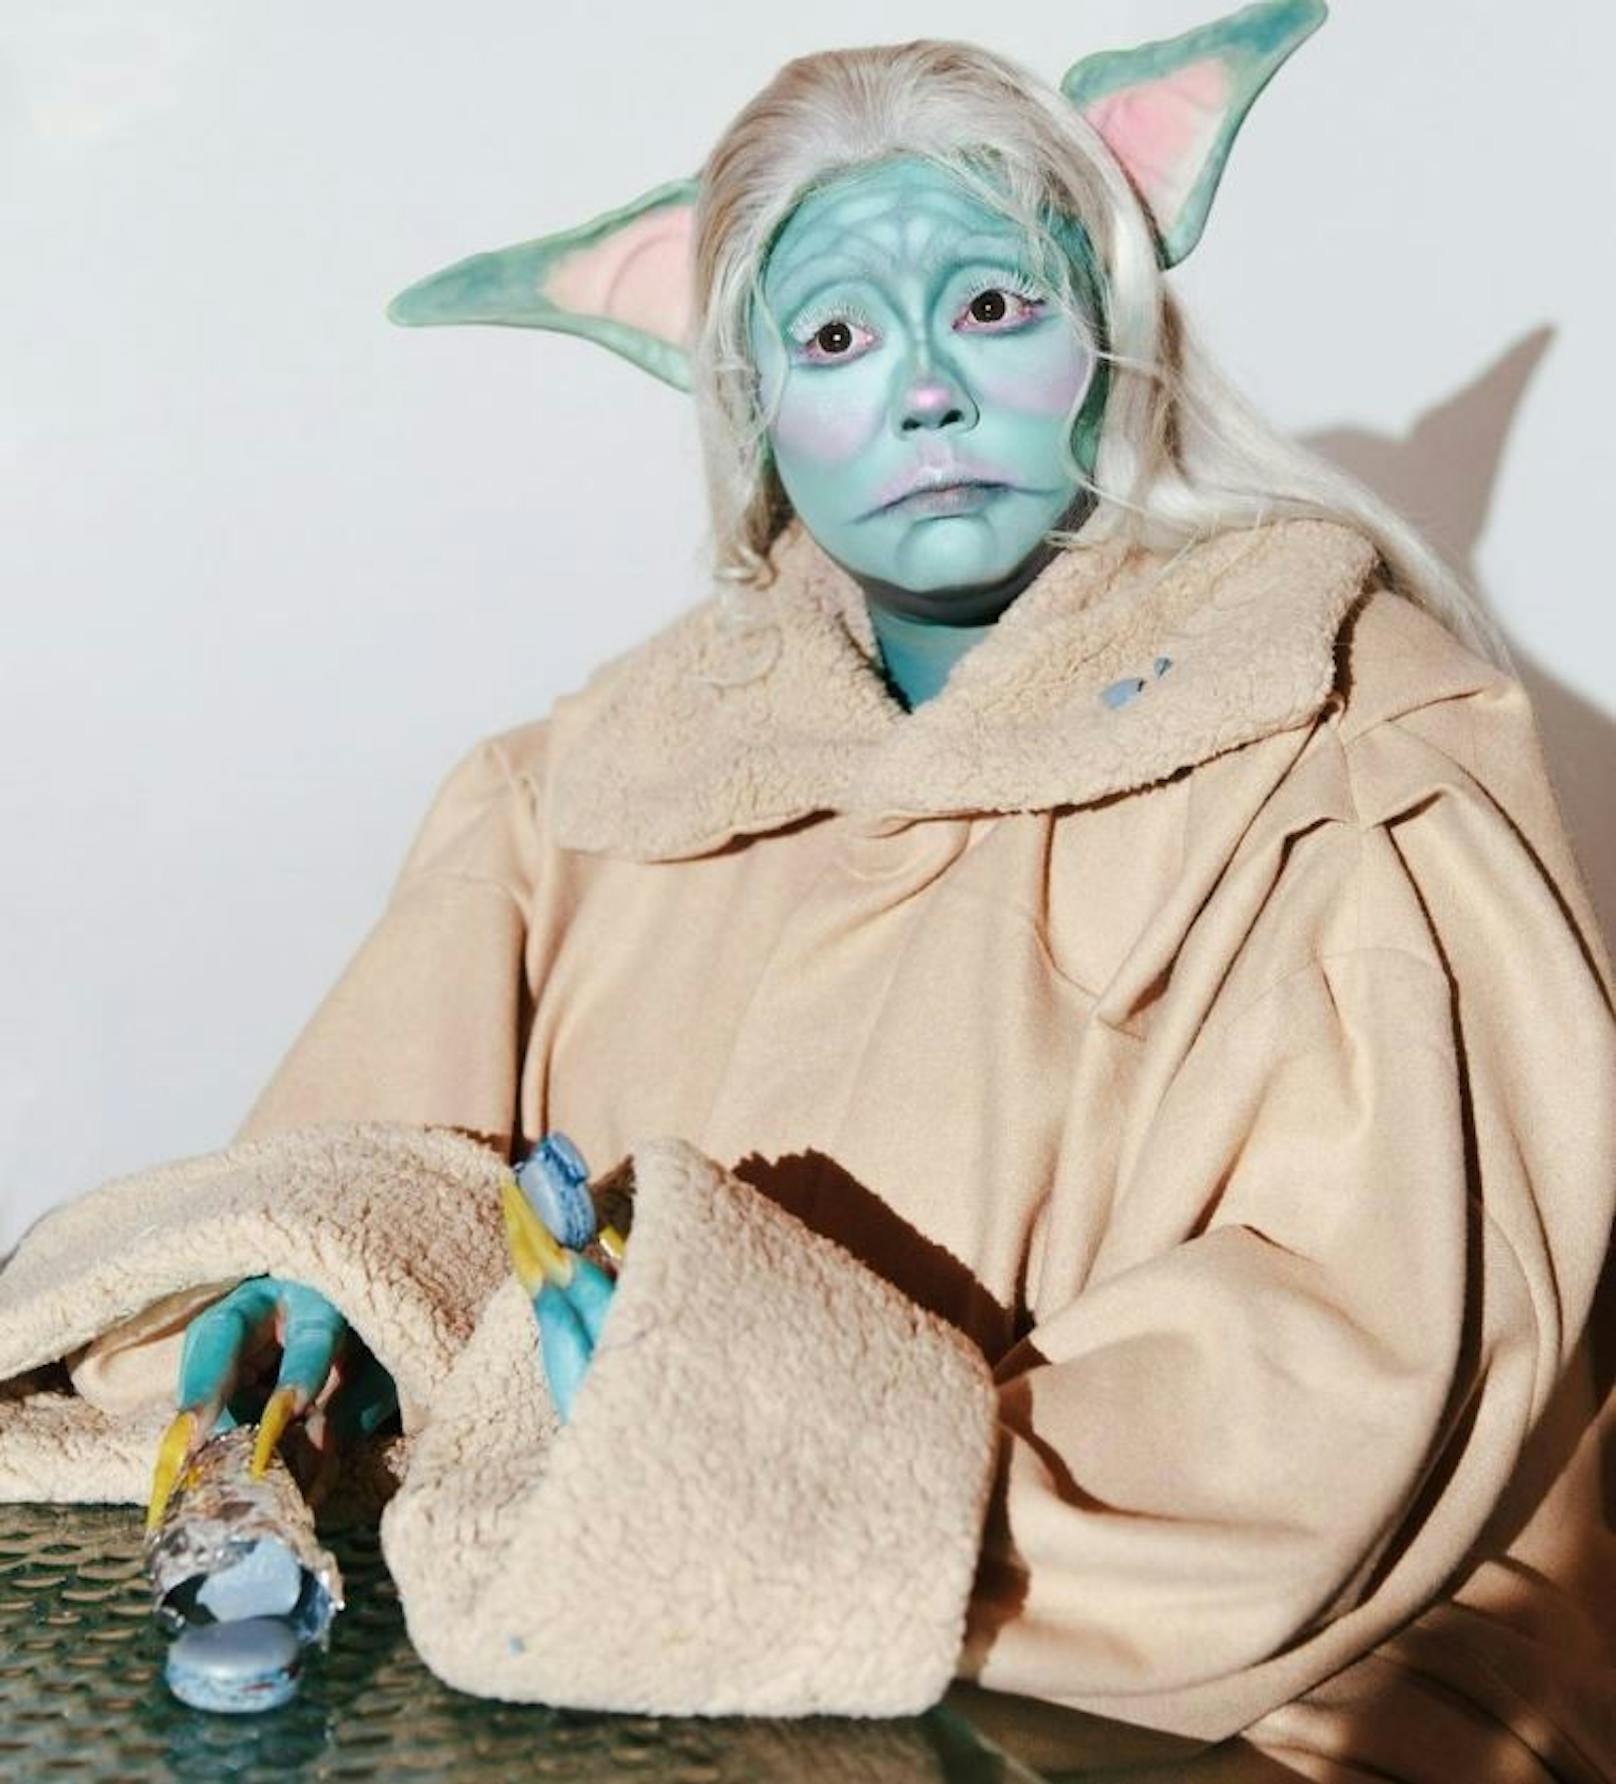 Sängerin Lizzo als Baby Yoda